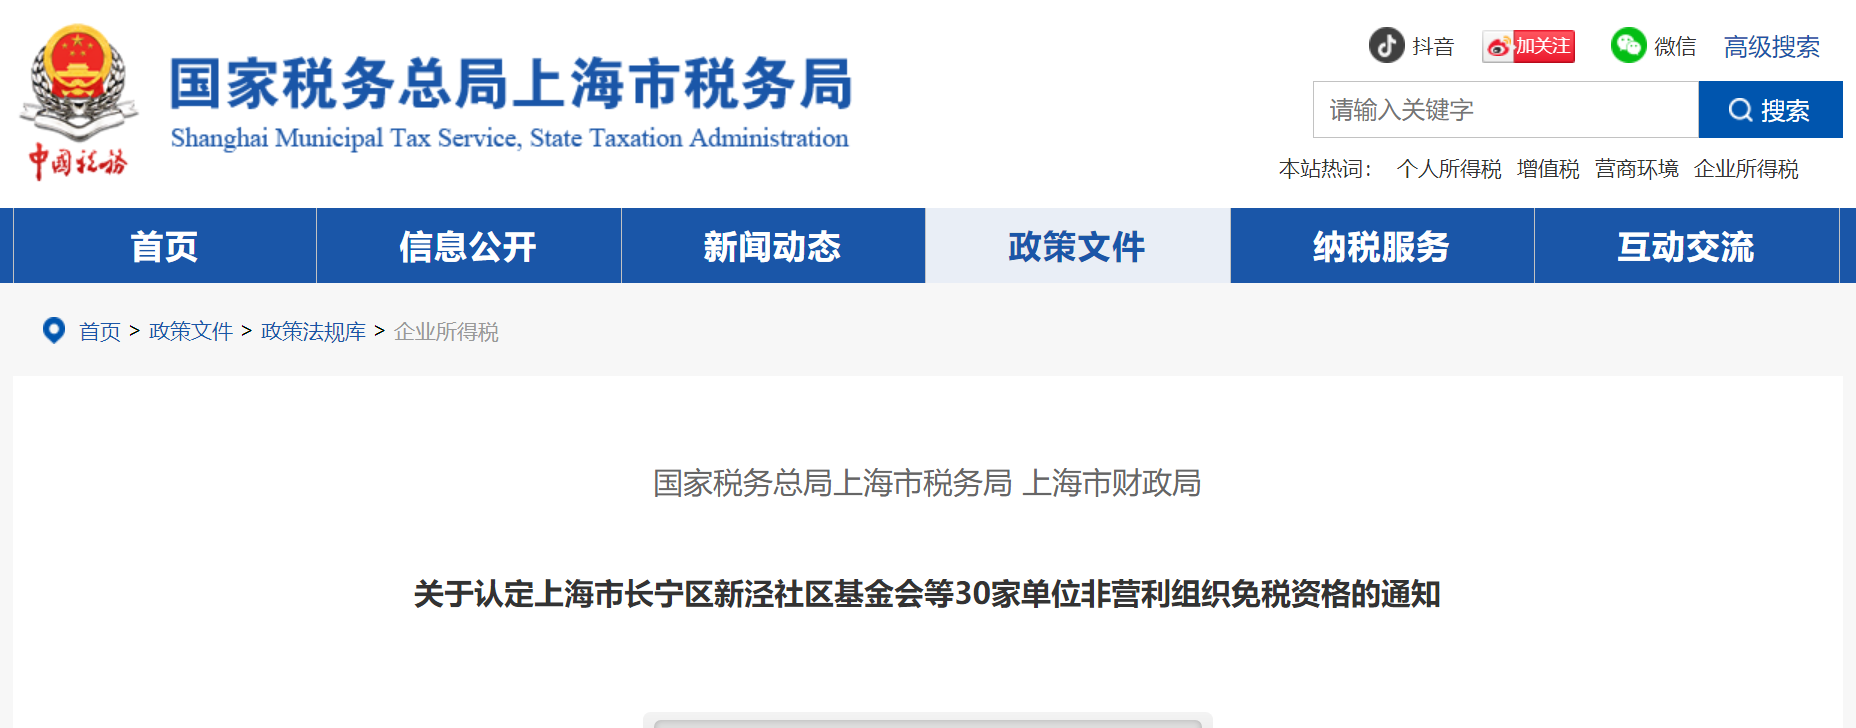 认定上海市长宁区新泾社区基金会等30家单位非营利组织免税资格